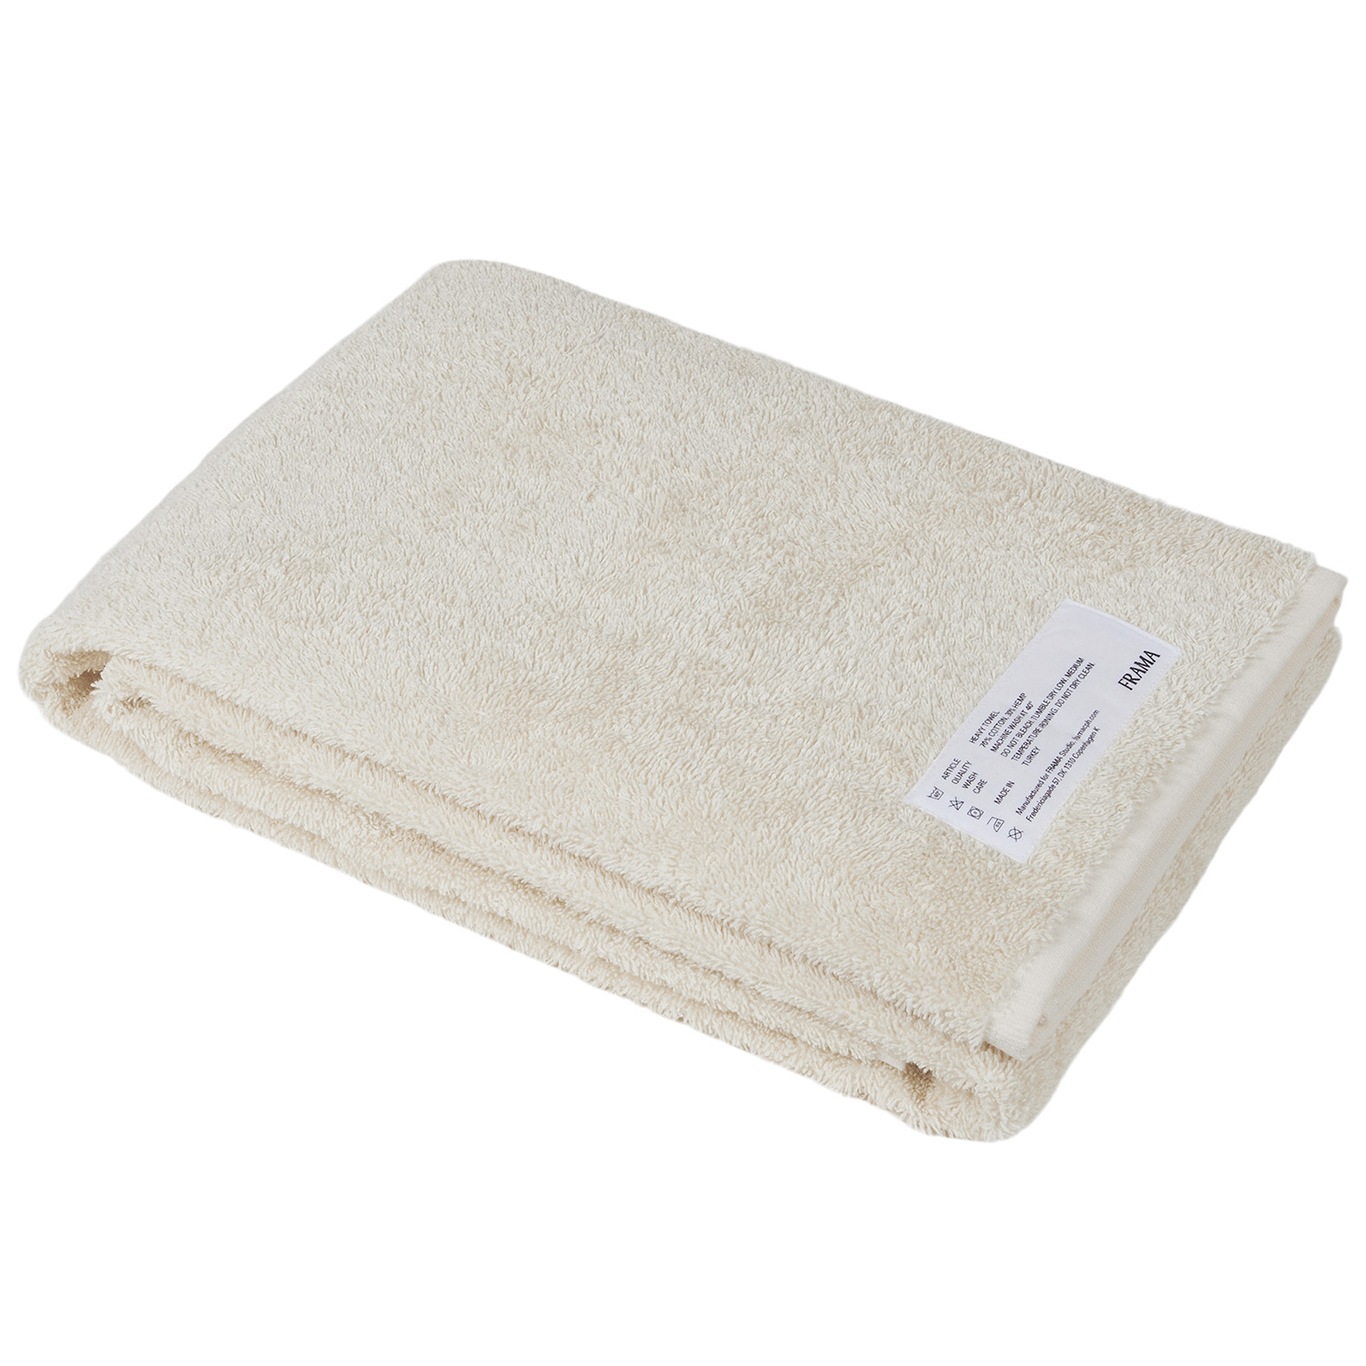 Heavy Towel Kylpypyyhe 70x140 cm, Luunvalkoinen